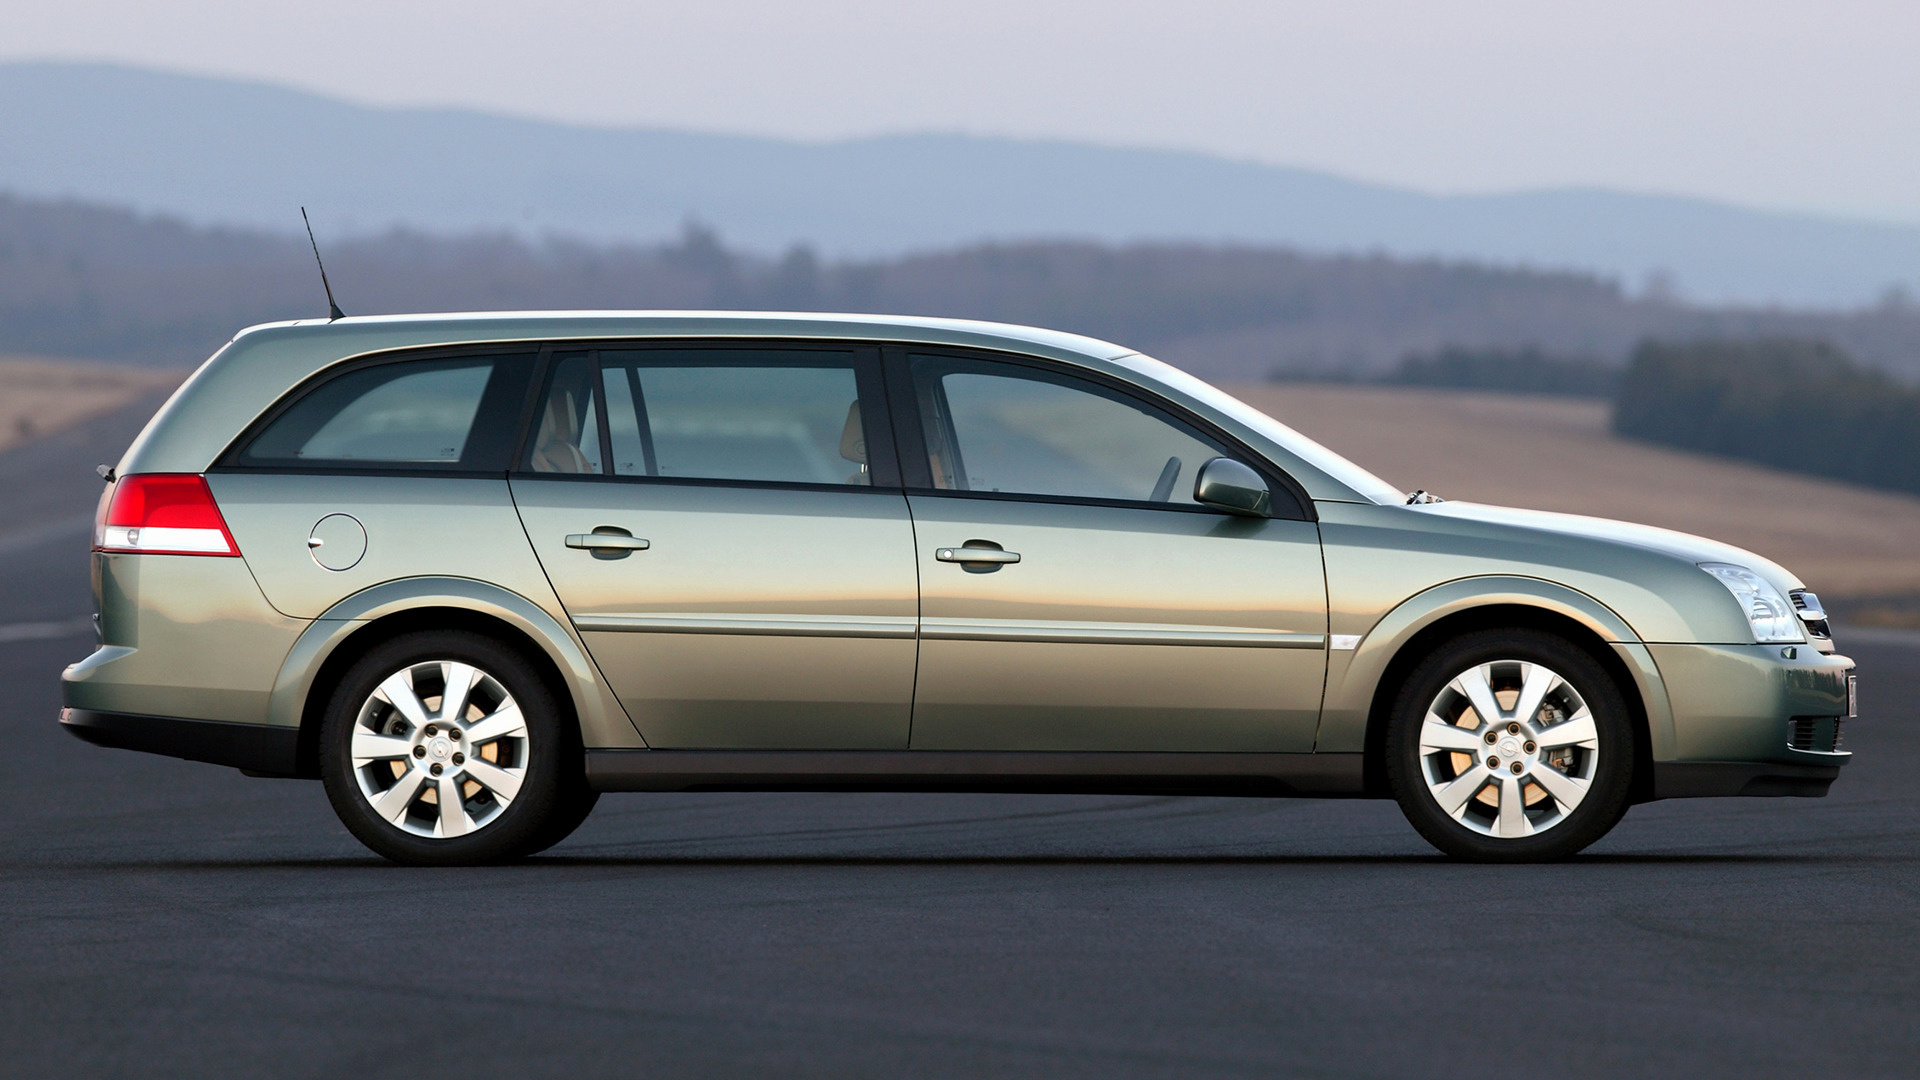 Вектра караван. Opel Vectra 2003 универсал. Opel Vectra c Caravan. Opel Vectra Station Wagon 2003. Опель Вектра с 2005 универсал.